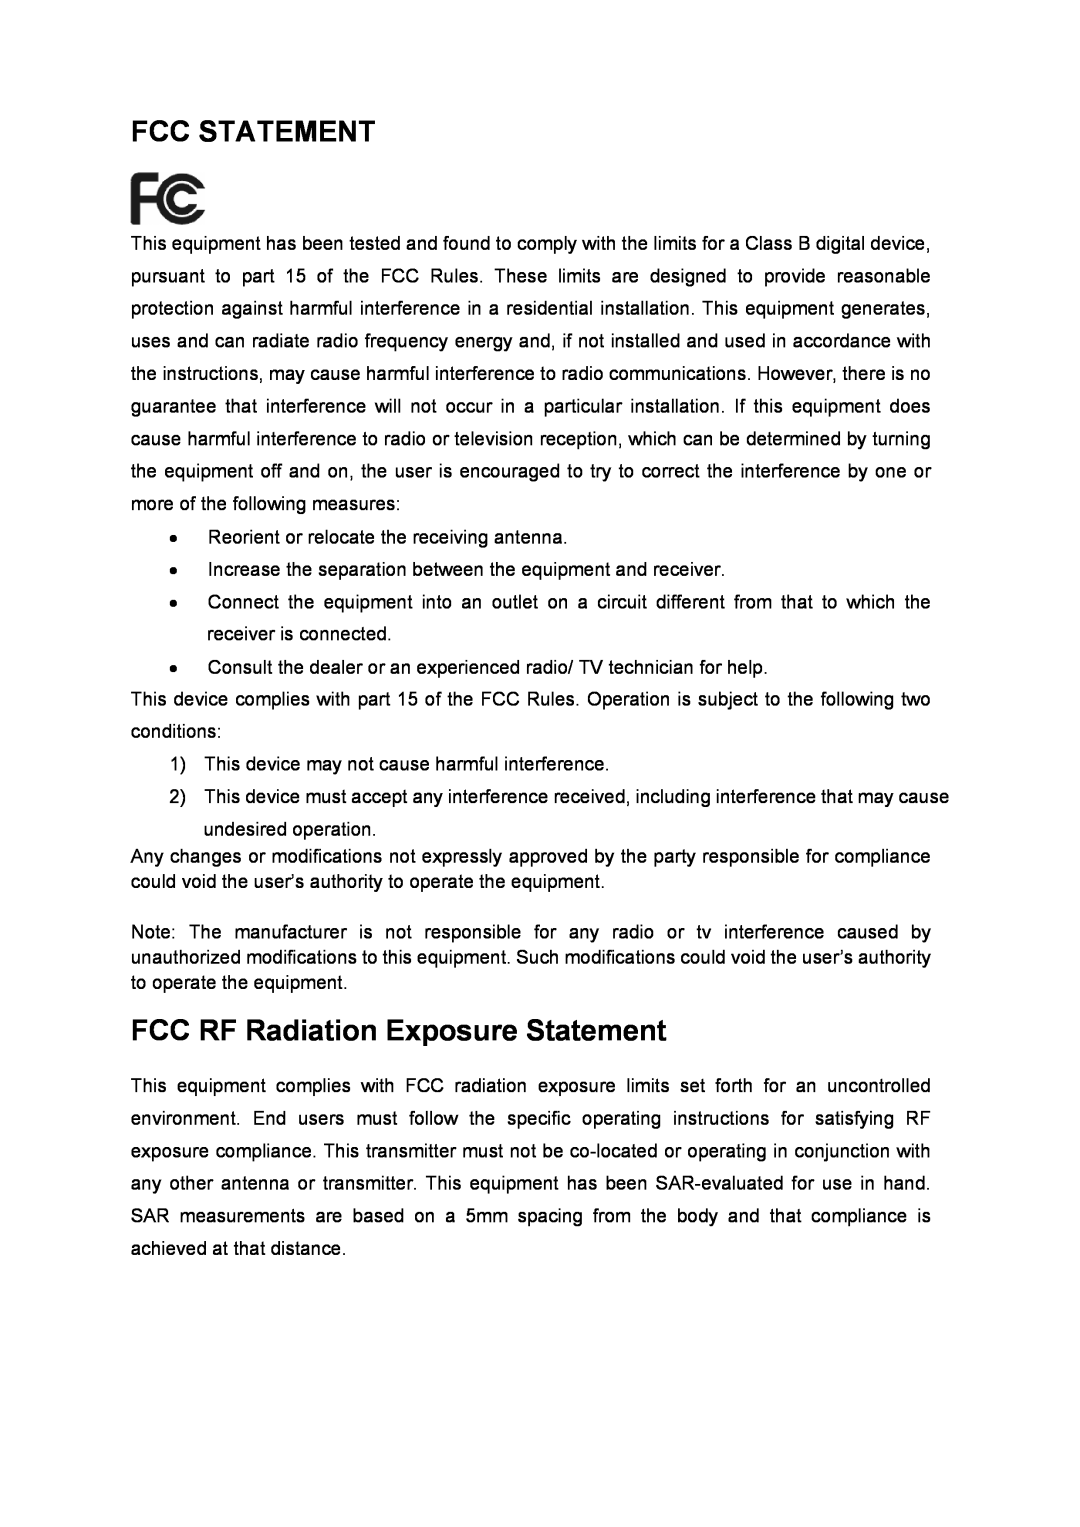 TP-Link TL-WN822N manual Fcc Statement, FCC RF Radiation Exposure Statement 